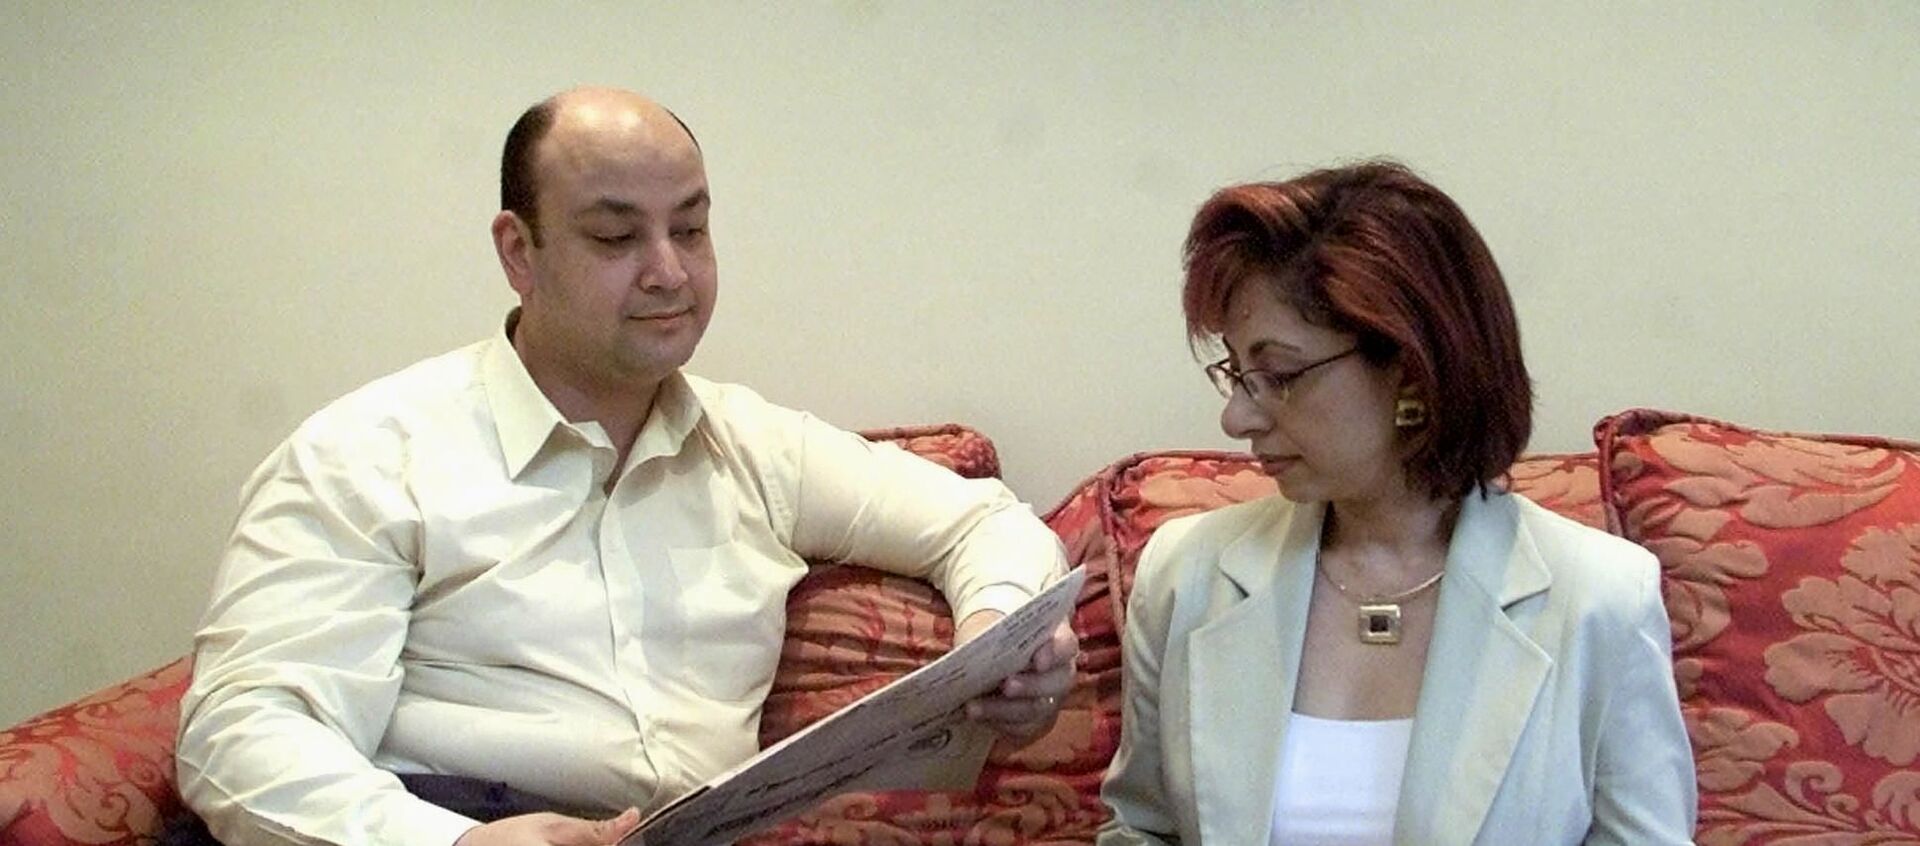 الإعلامي المصري، عمرو أديب مع زوجته الإعلامية، لميس الحديدي، القاهرة، 14 يونيو/ حزيران 2001 - سبوتنيك عربي, 1920, 30.05.2021